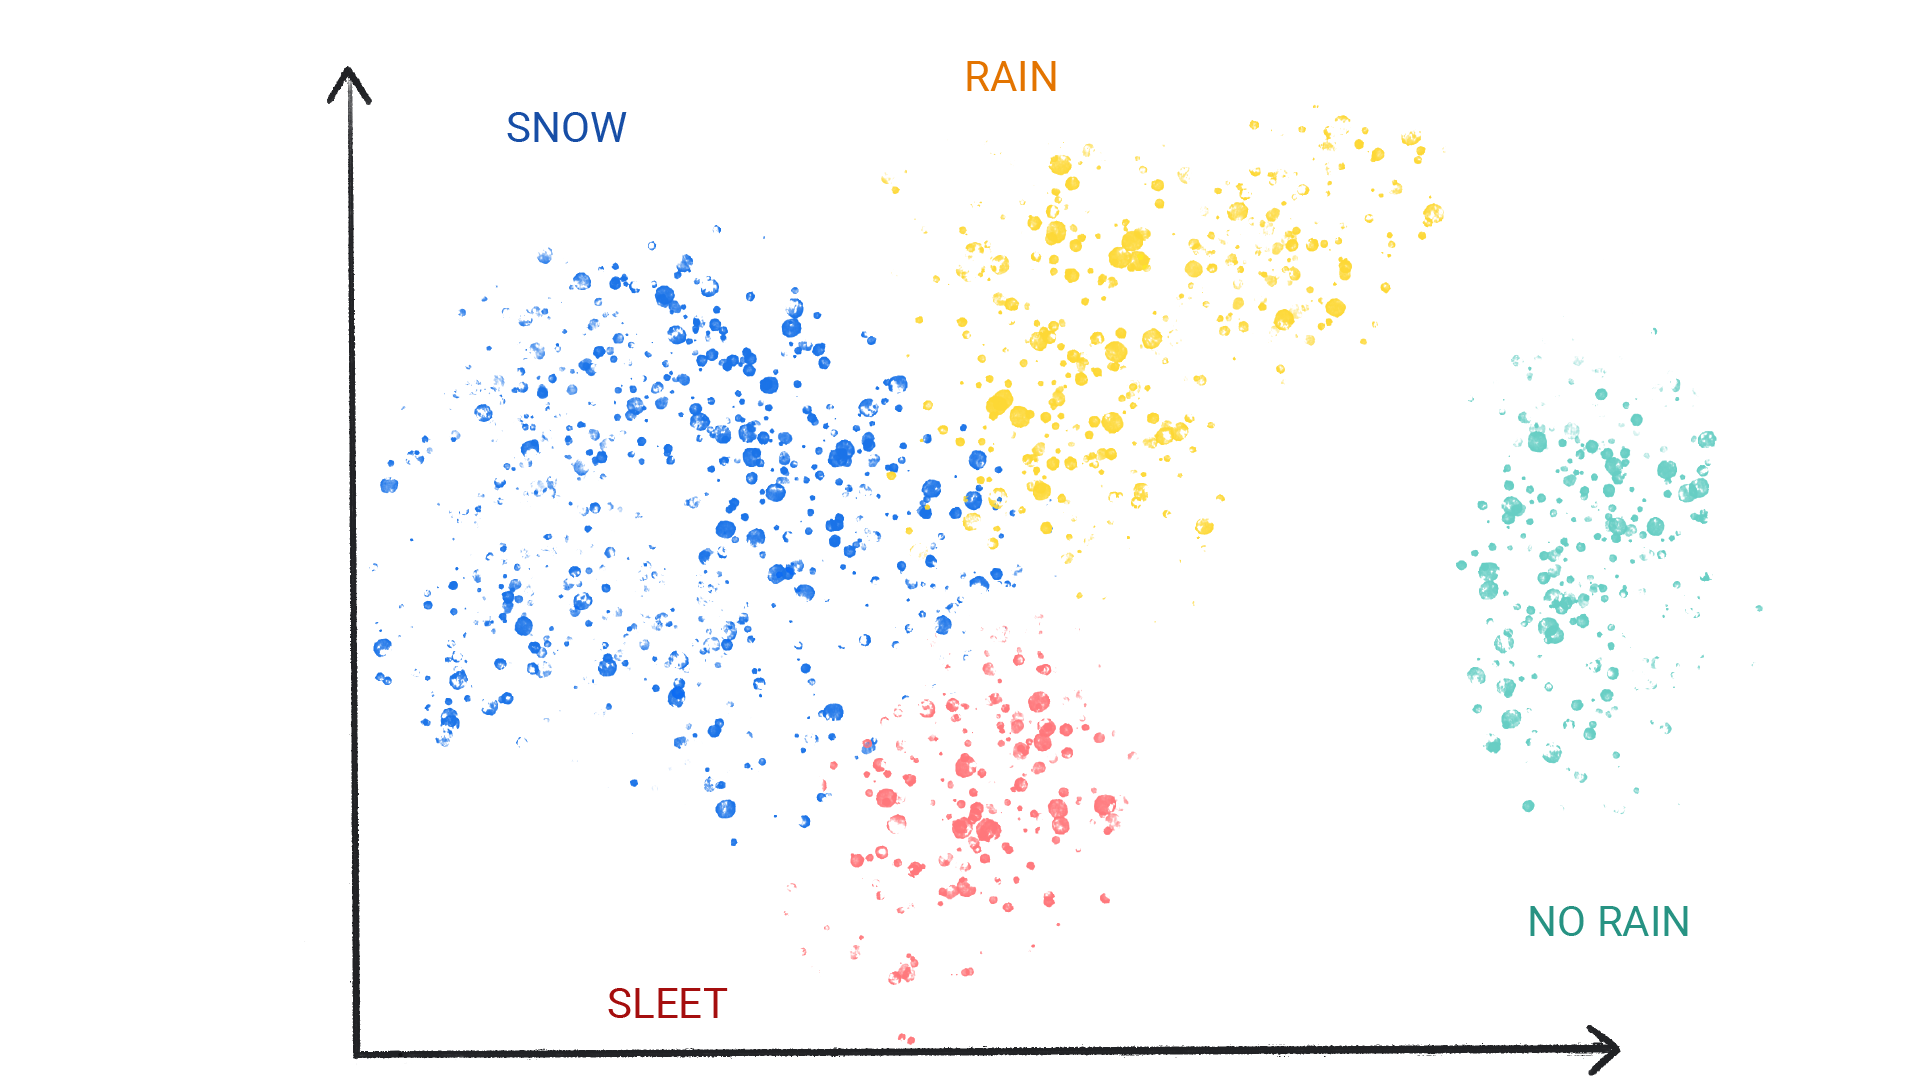 Kar, yağmur, dolu ve yağmursuz olarak etiketlenmiş kümeler üzerindeki renkli noktaların gösterildiği bir resim.